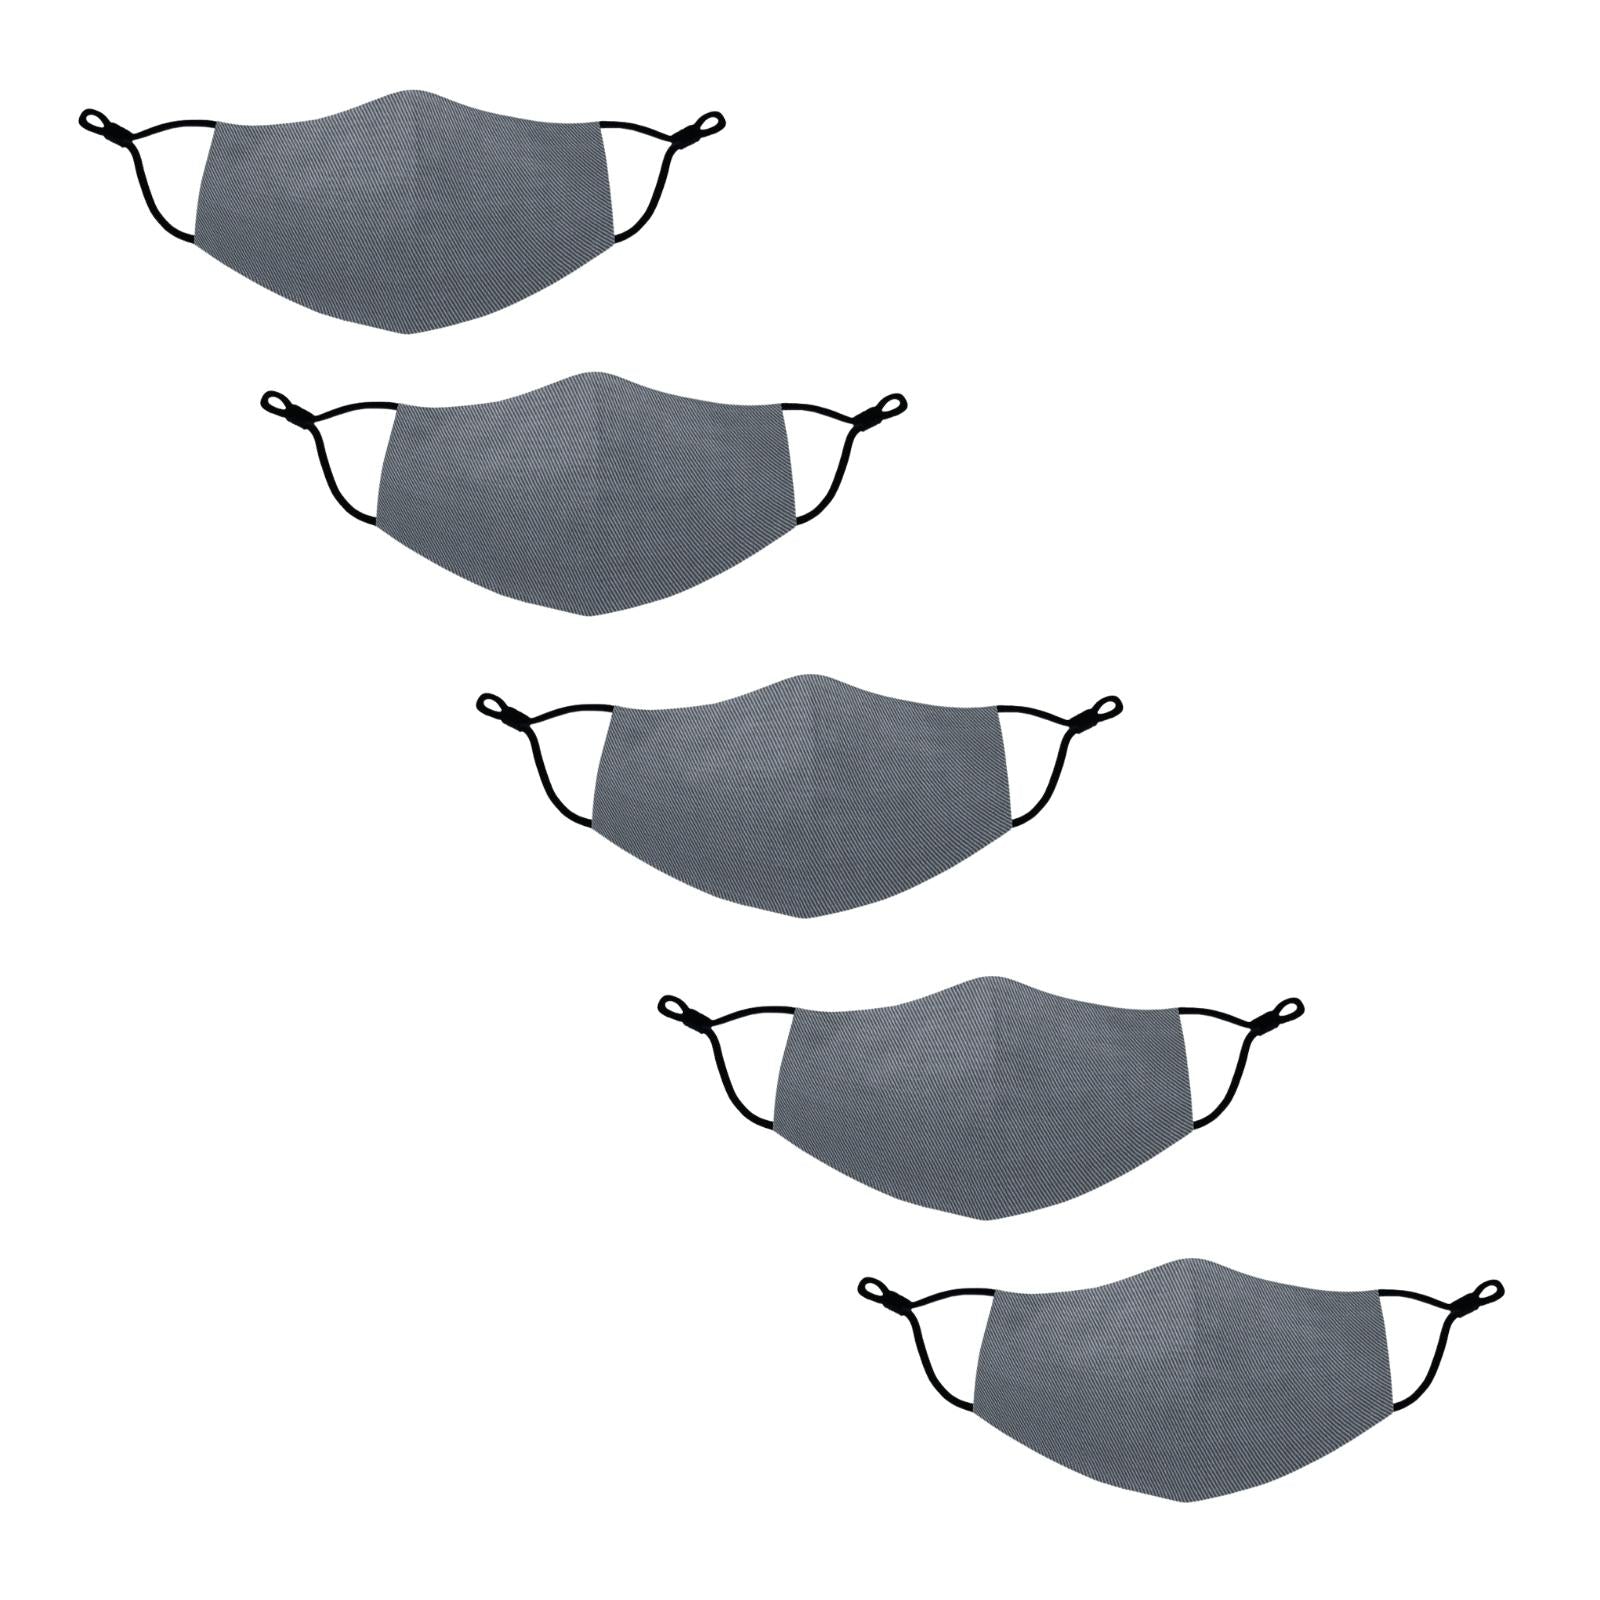 5 Pack of Plain Gray Masks